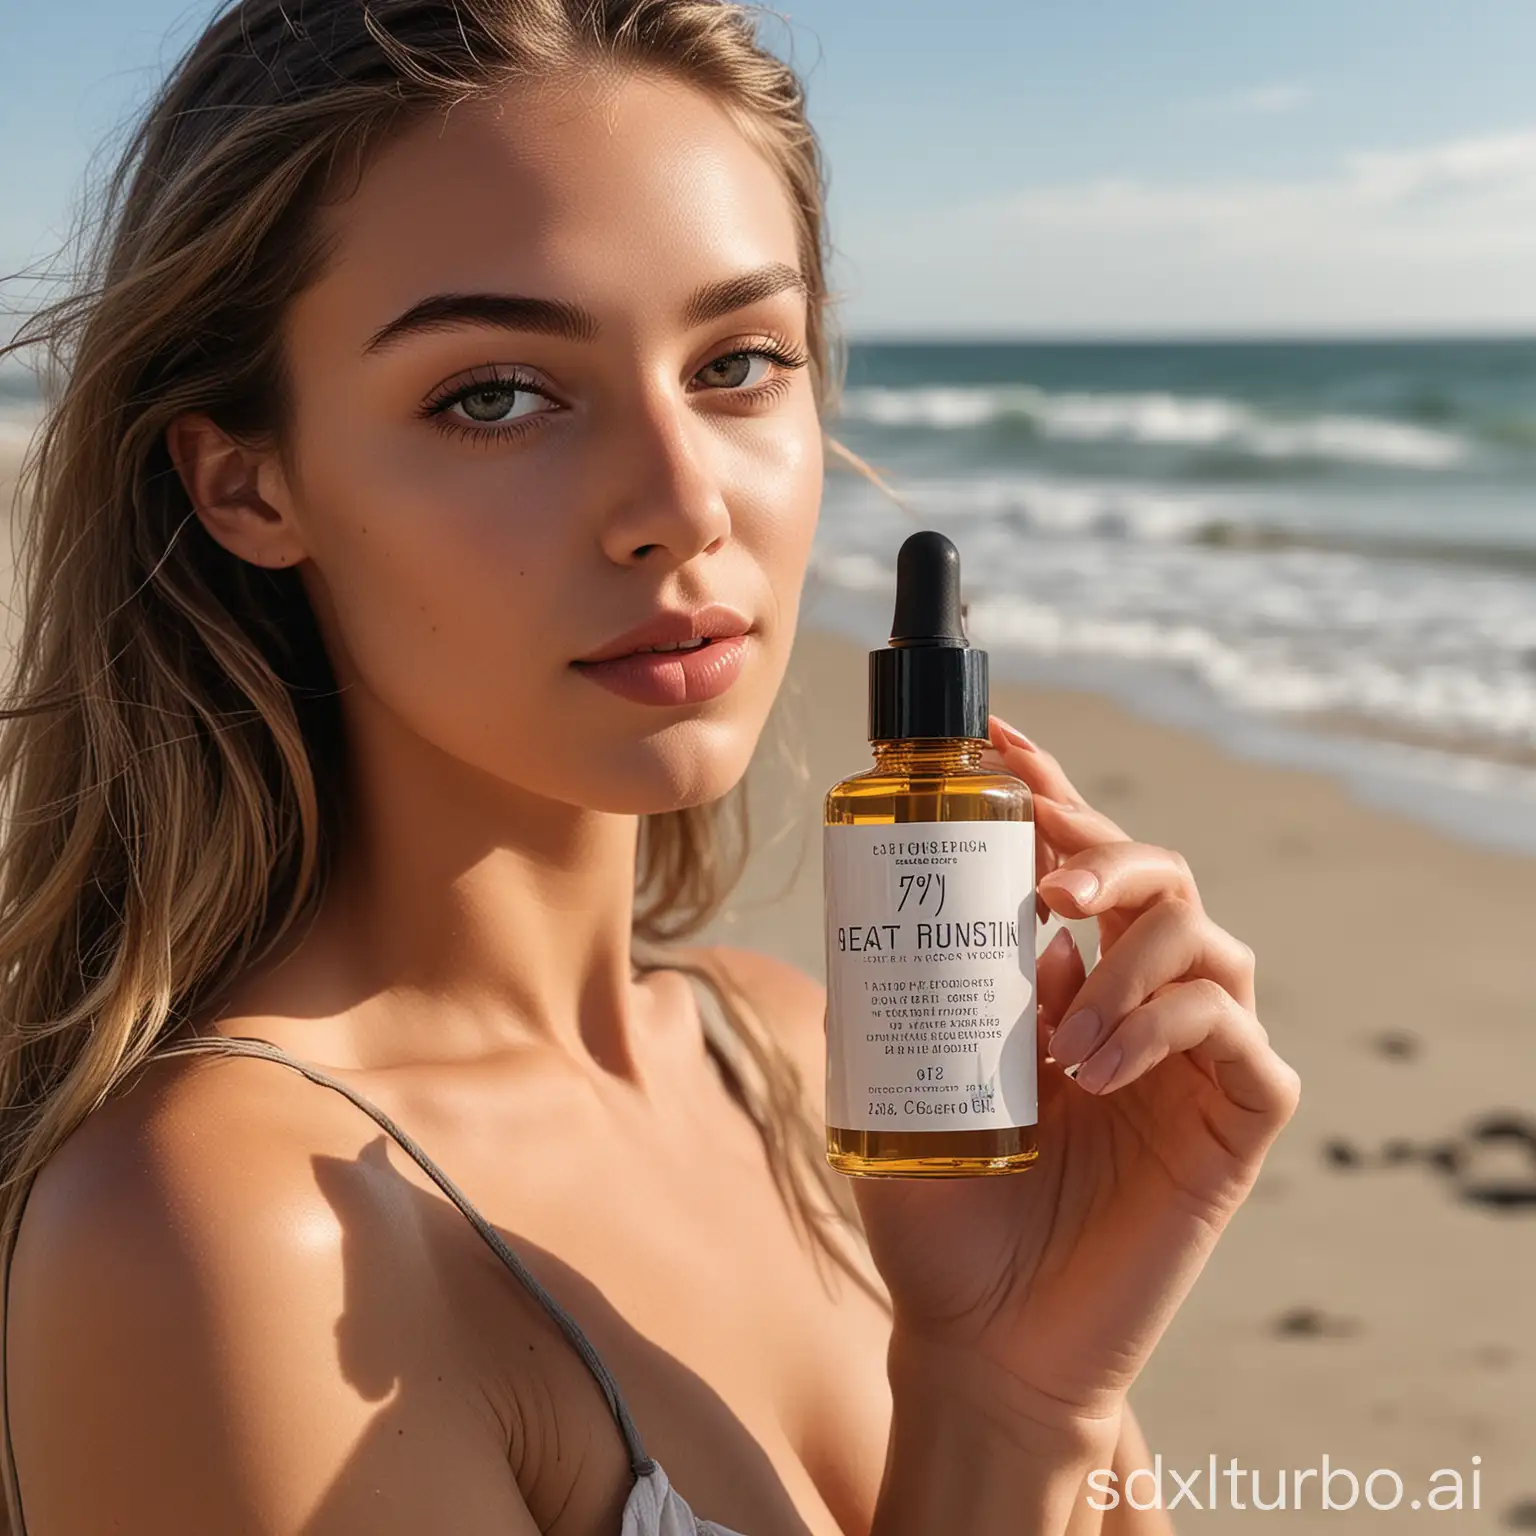 一个欧美女模特在沙滩边手拿70ml容量的美黑油产品